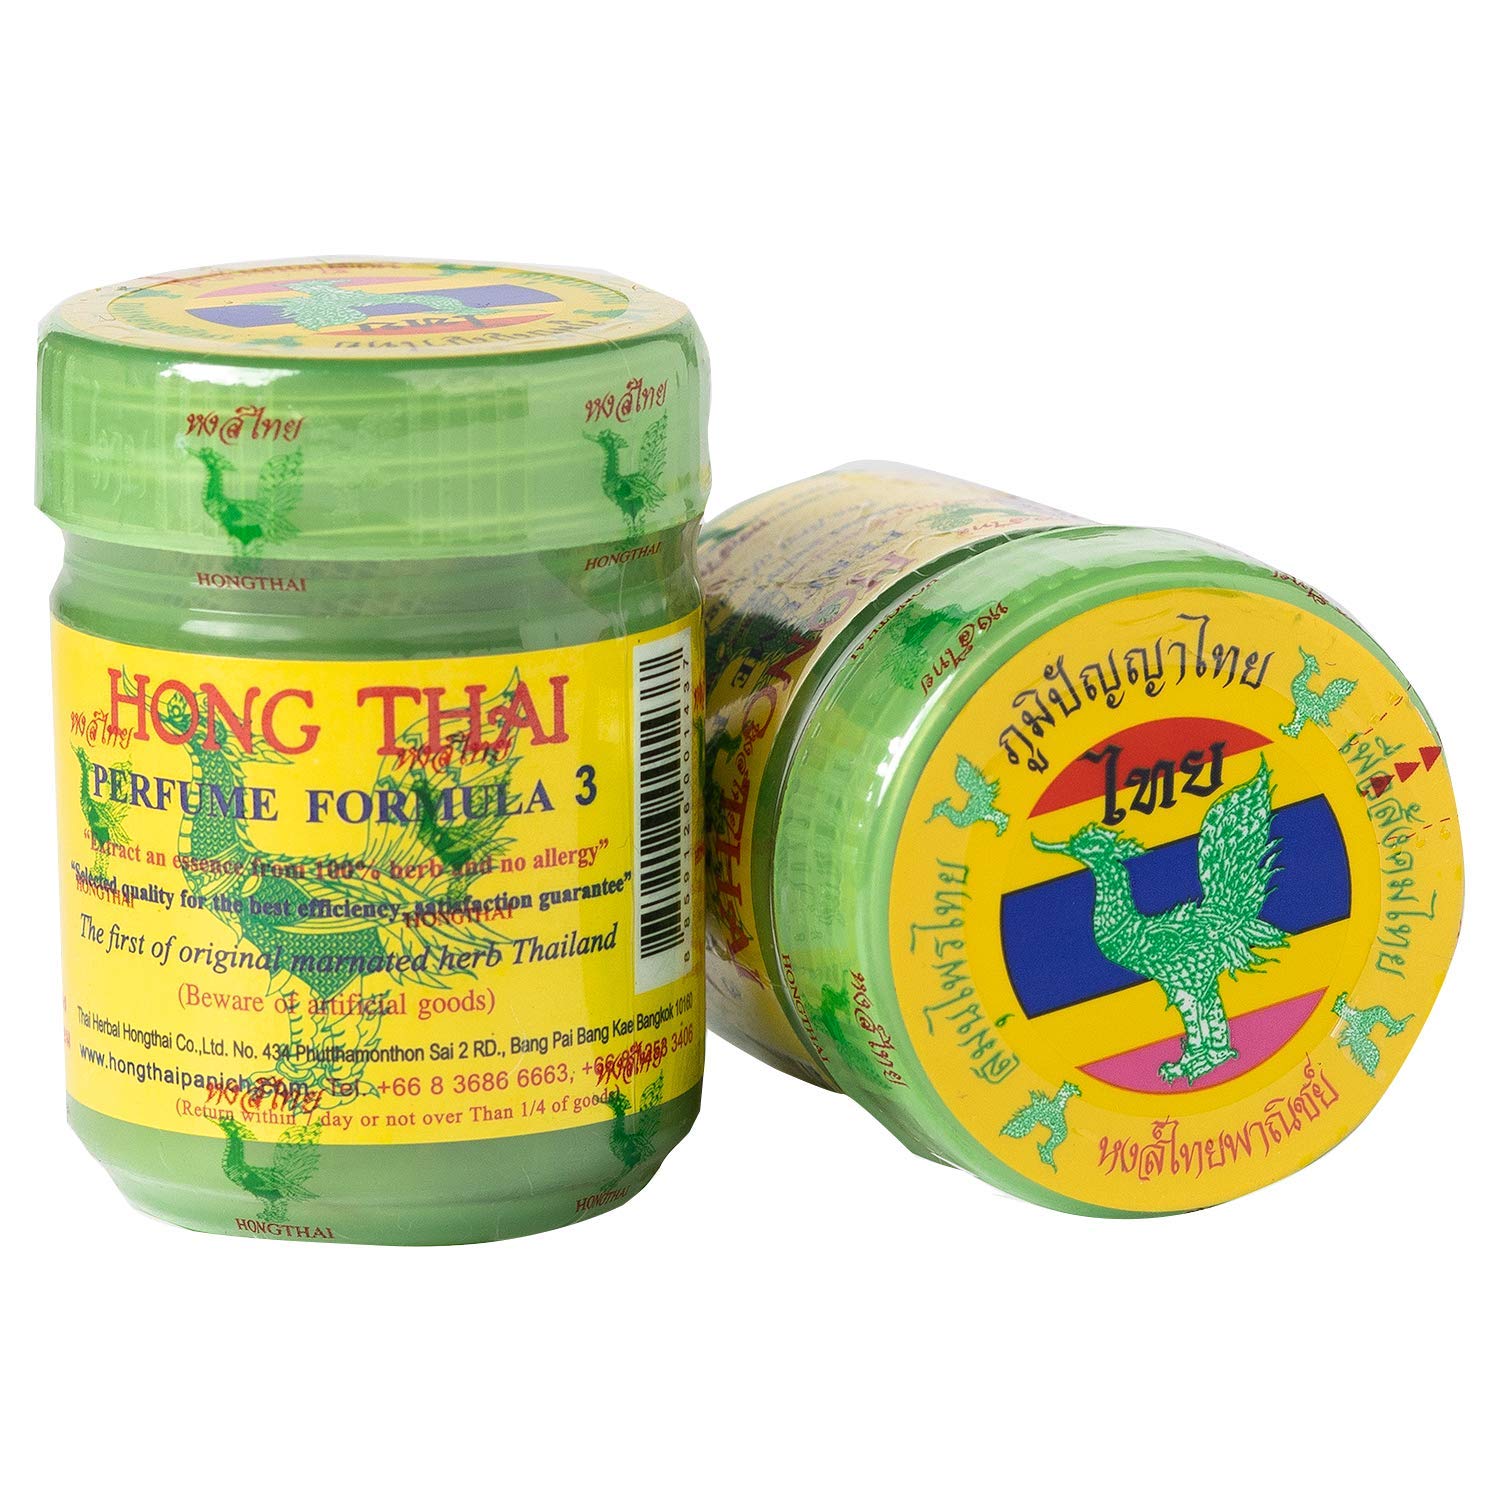 Hong Thai Herbal Inhaler Cold Flu Relief Dizziness Fuzzy Head 20 G.